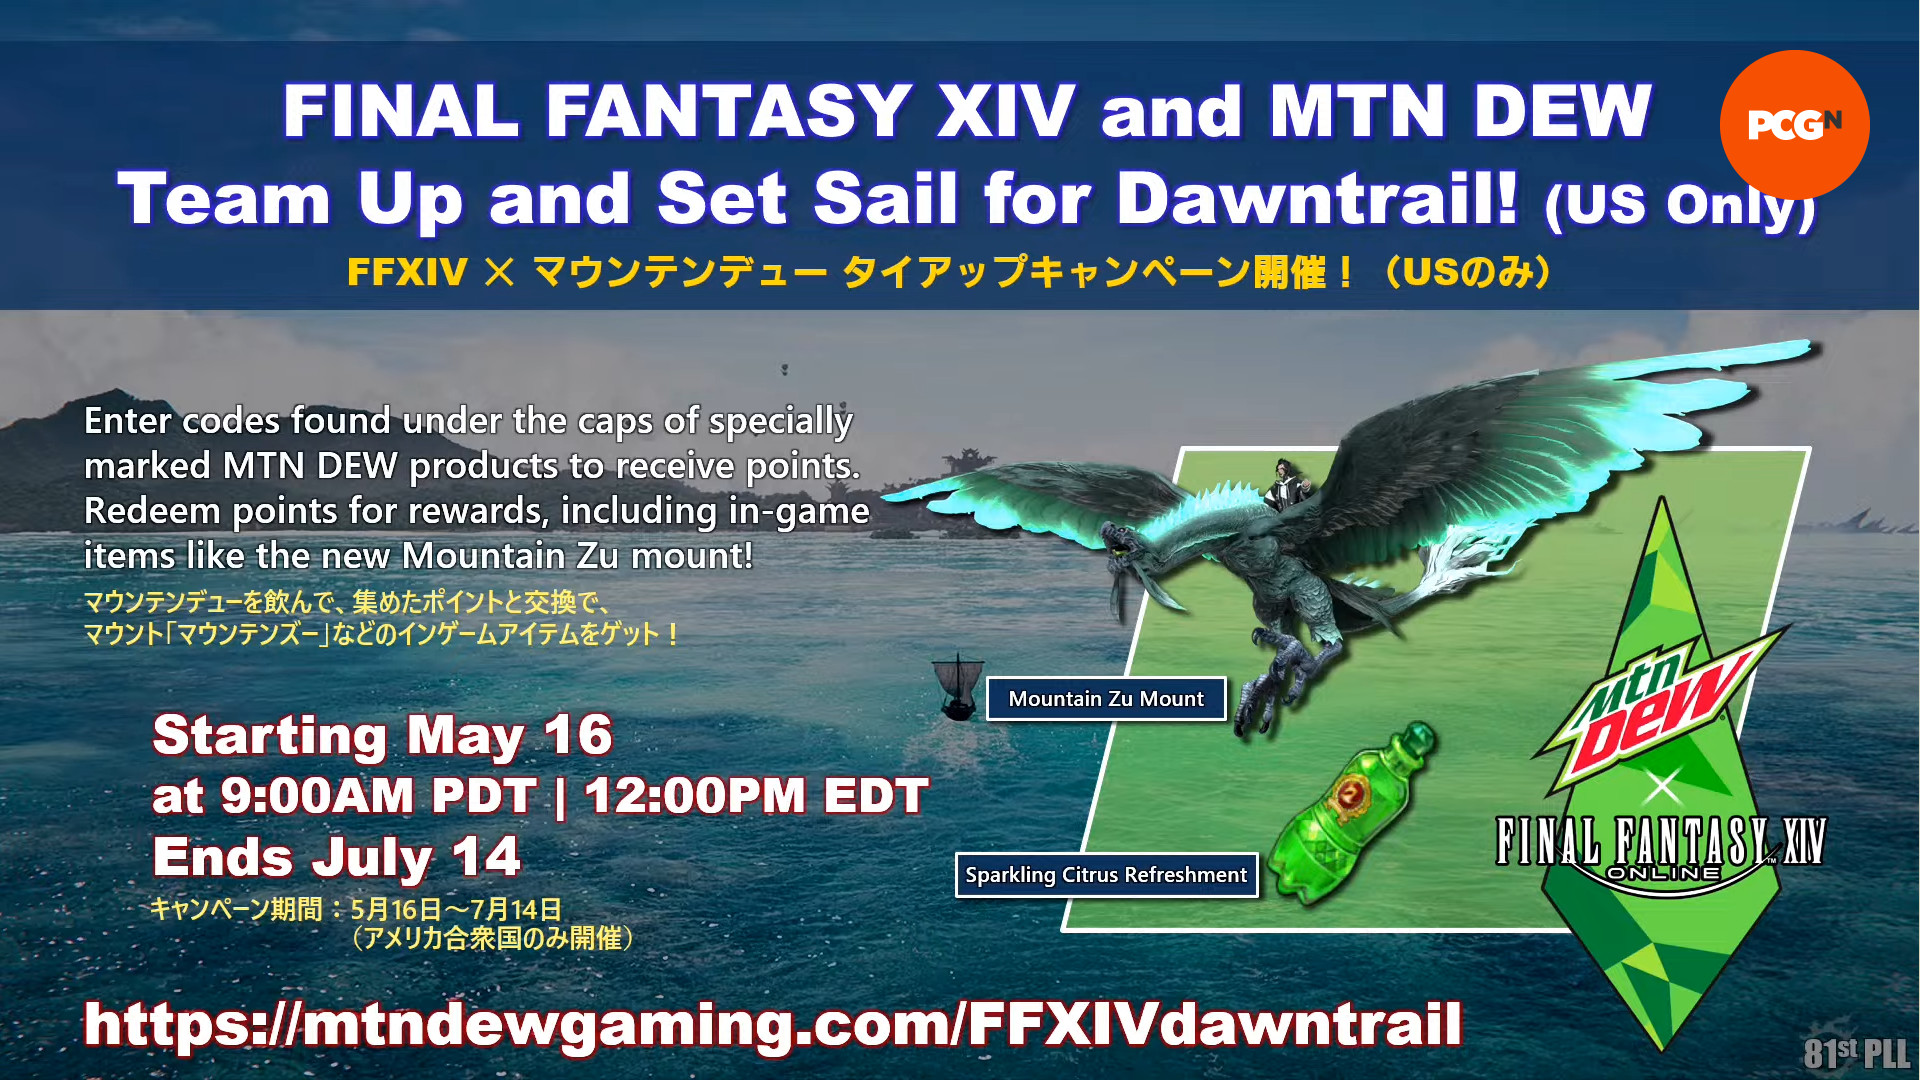 Evento cruzado FF14 x MTN DEW: imagen promocional de la colaboración exclusiva de EE. UU. entre Final Fantasy 14 y Mountain Dew.